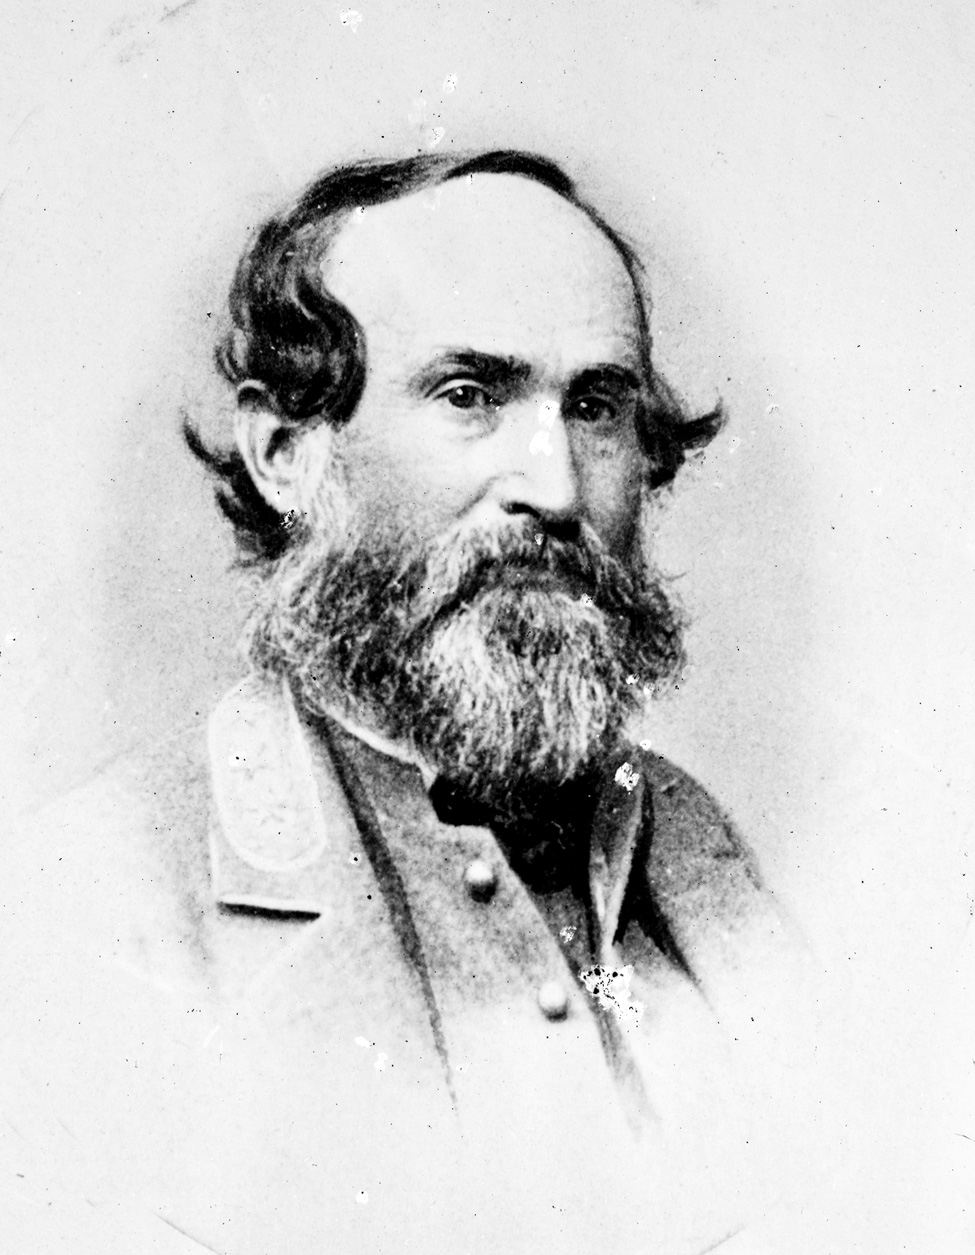 Confederate Brig. Gen. Jubal Early